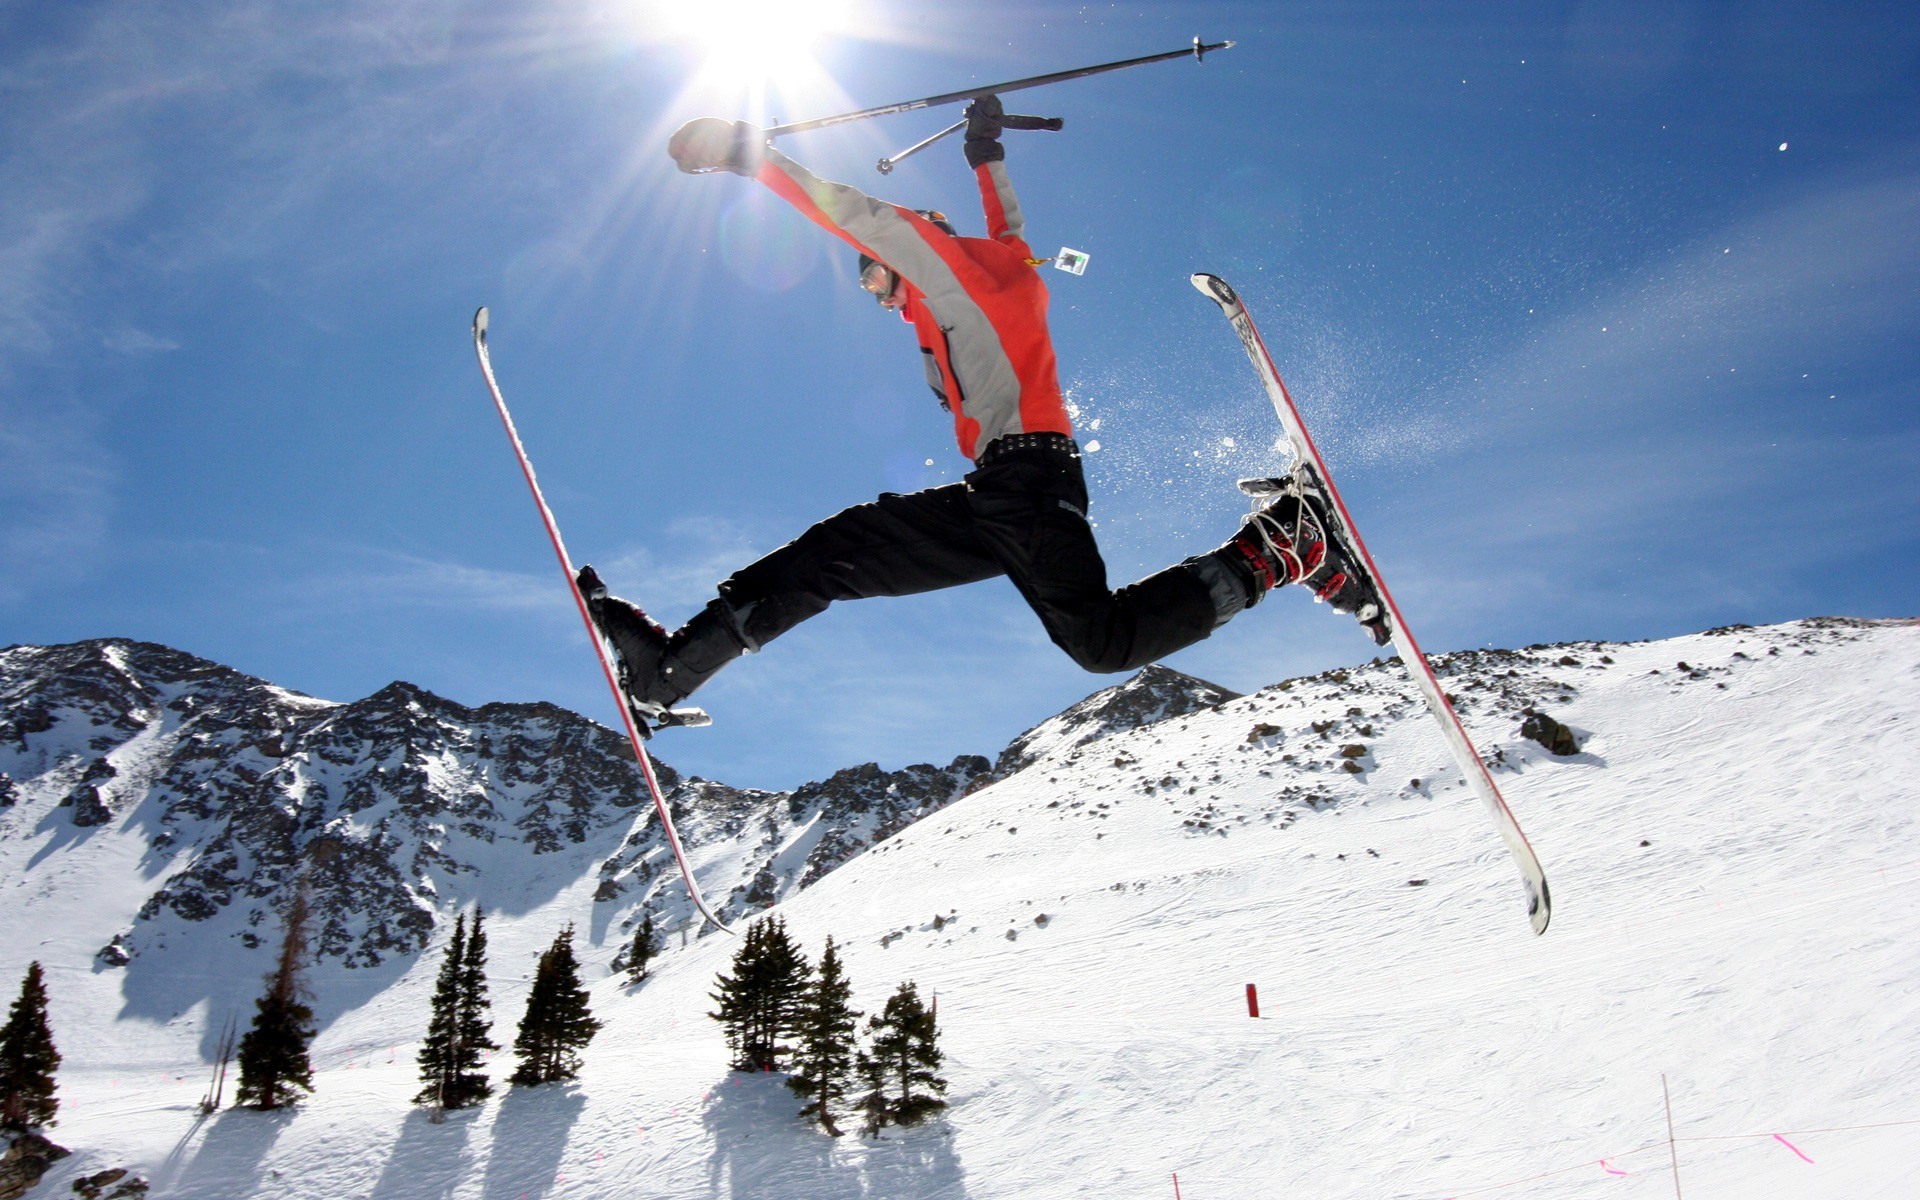 Descarga gratuita de fondo de pantalla para móvil de Invierno, Nieve, Montaña, Esquí, Deporte.